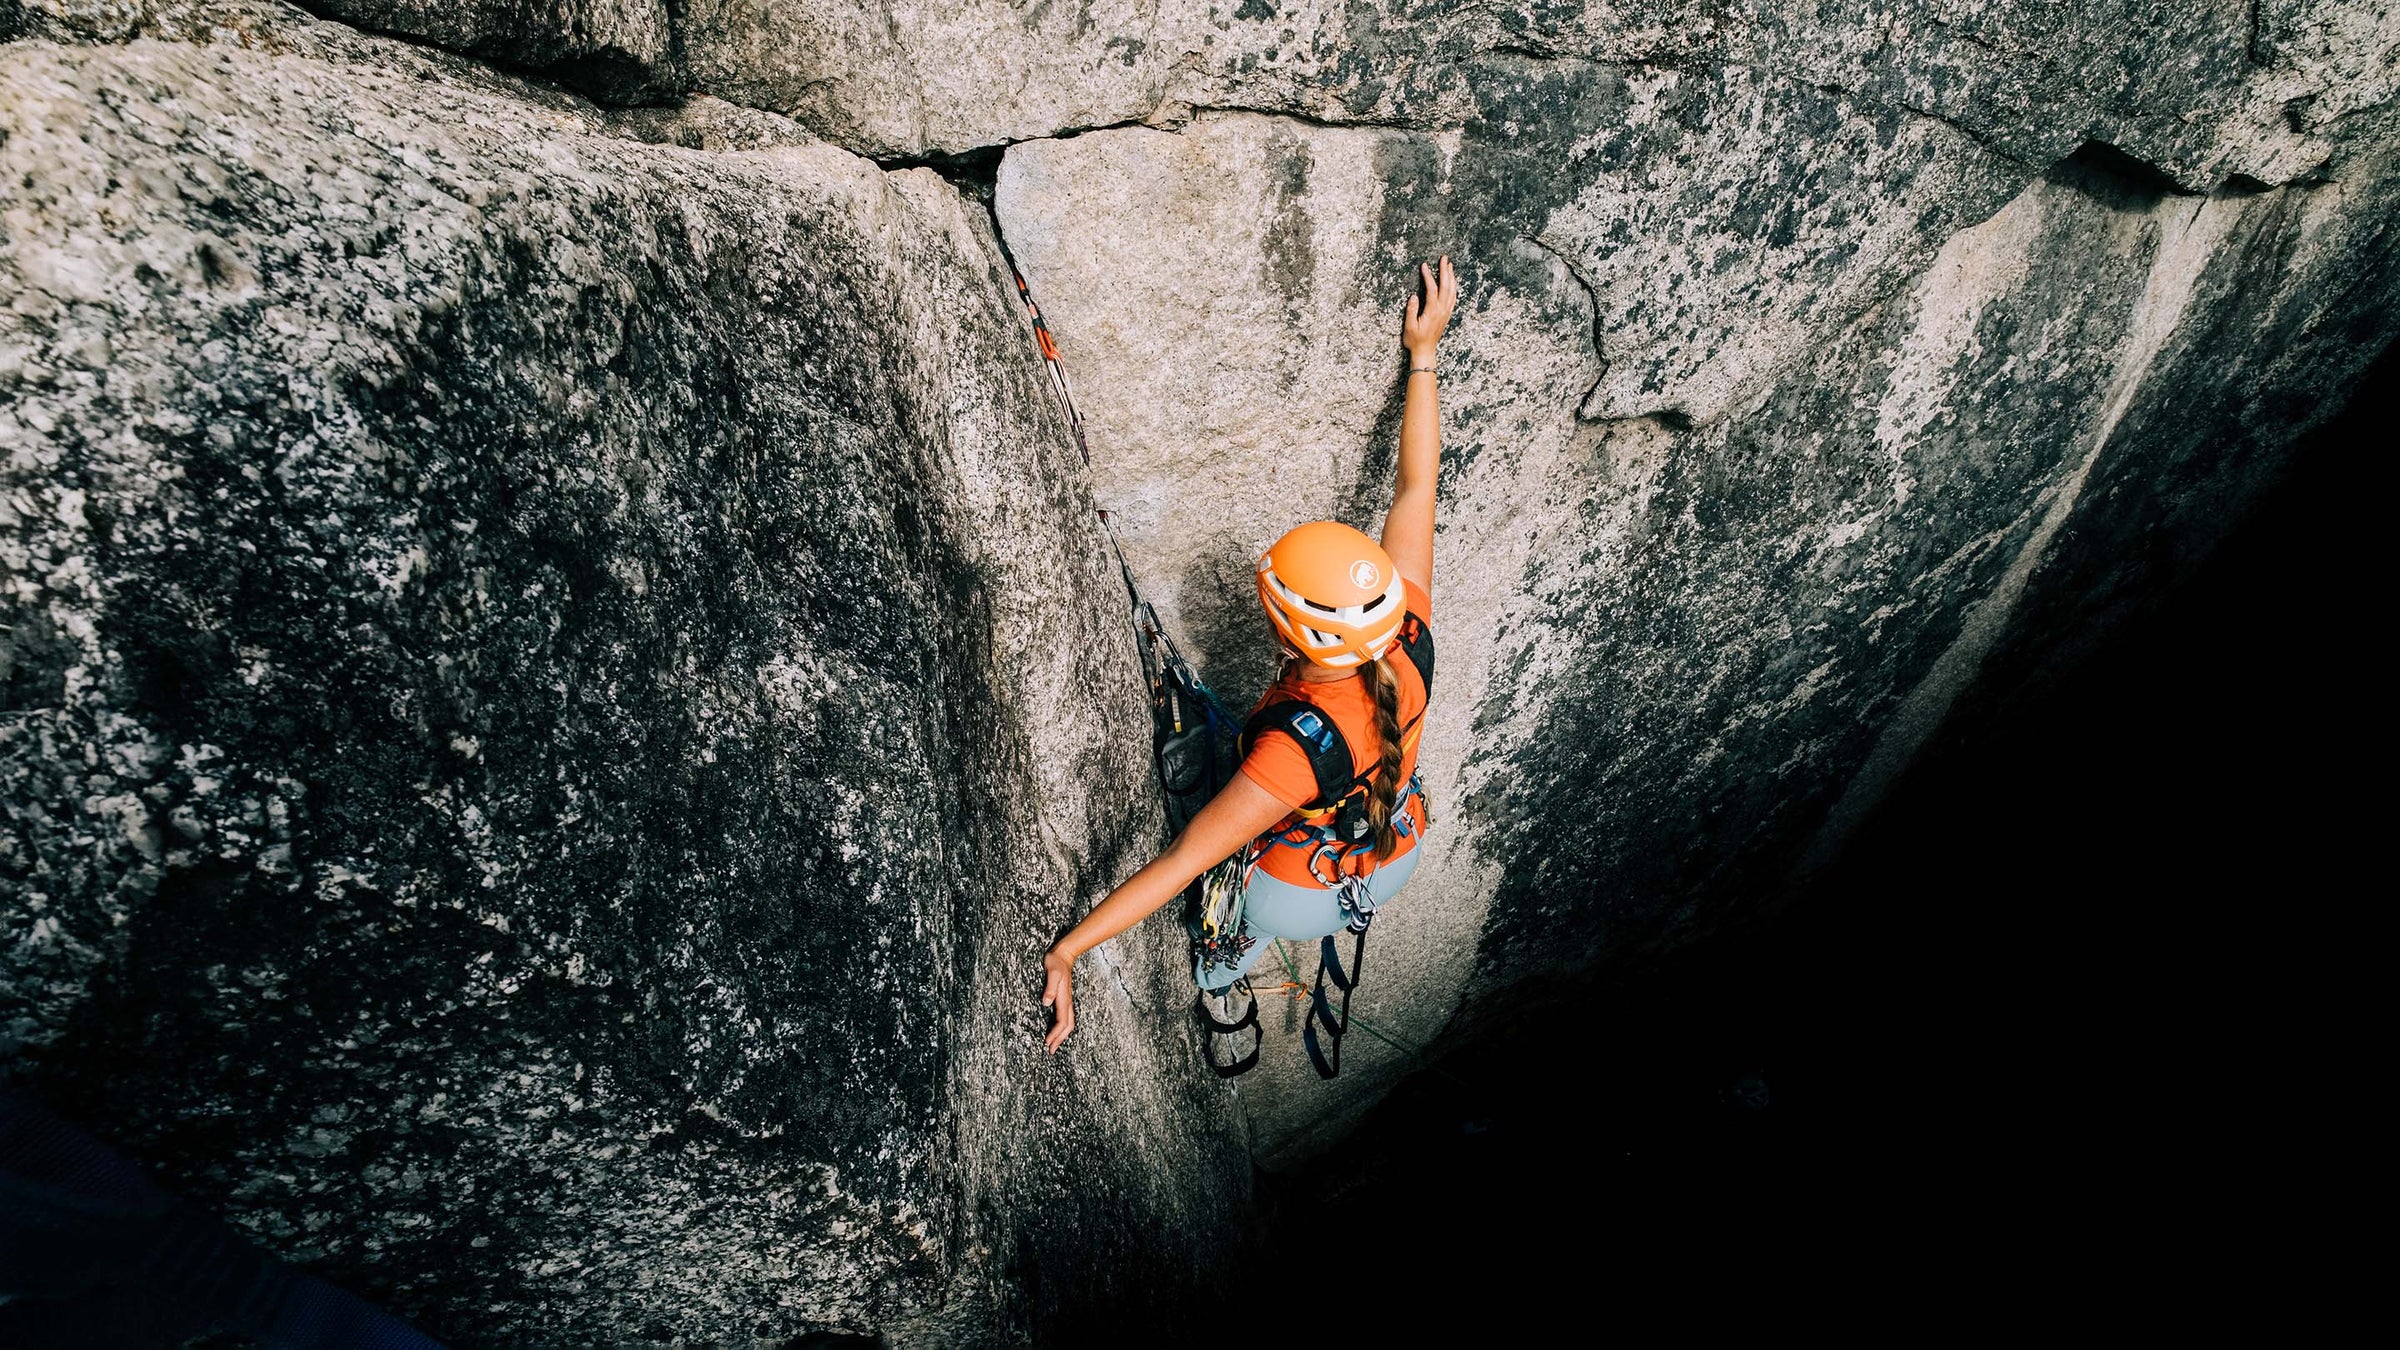 A woman aid climbs a rock face while rock climbing